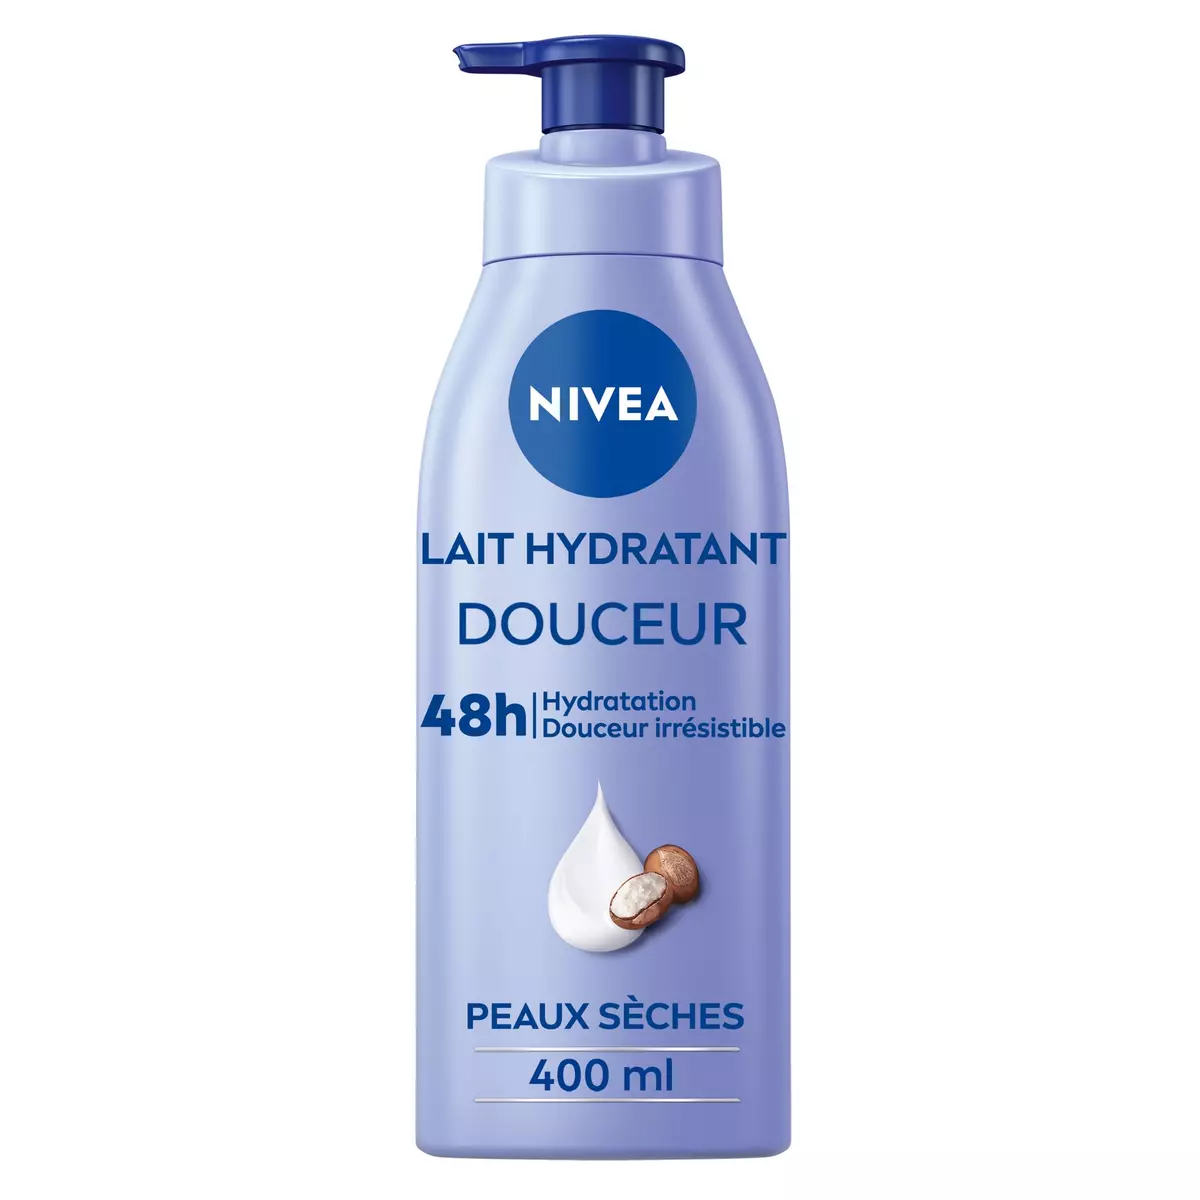 NIVEA Lait hydratant douceur beurre de karité peaux sèches 400ml